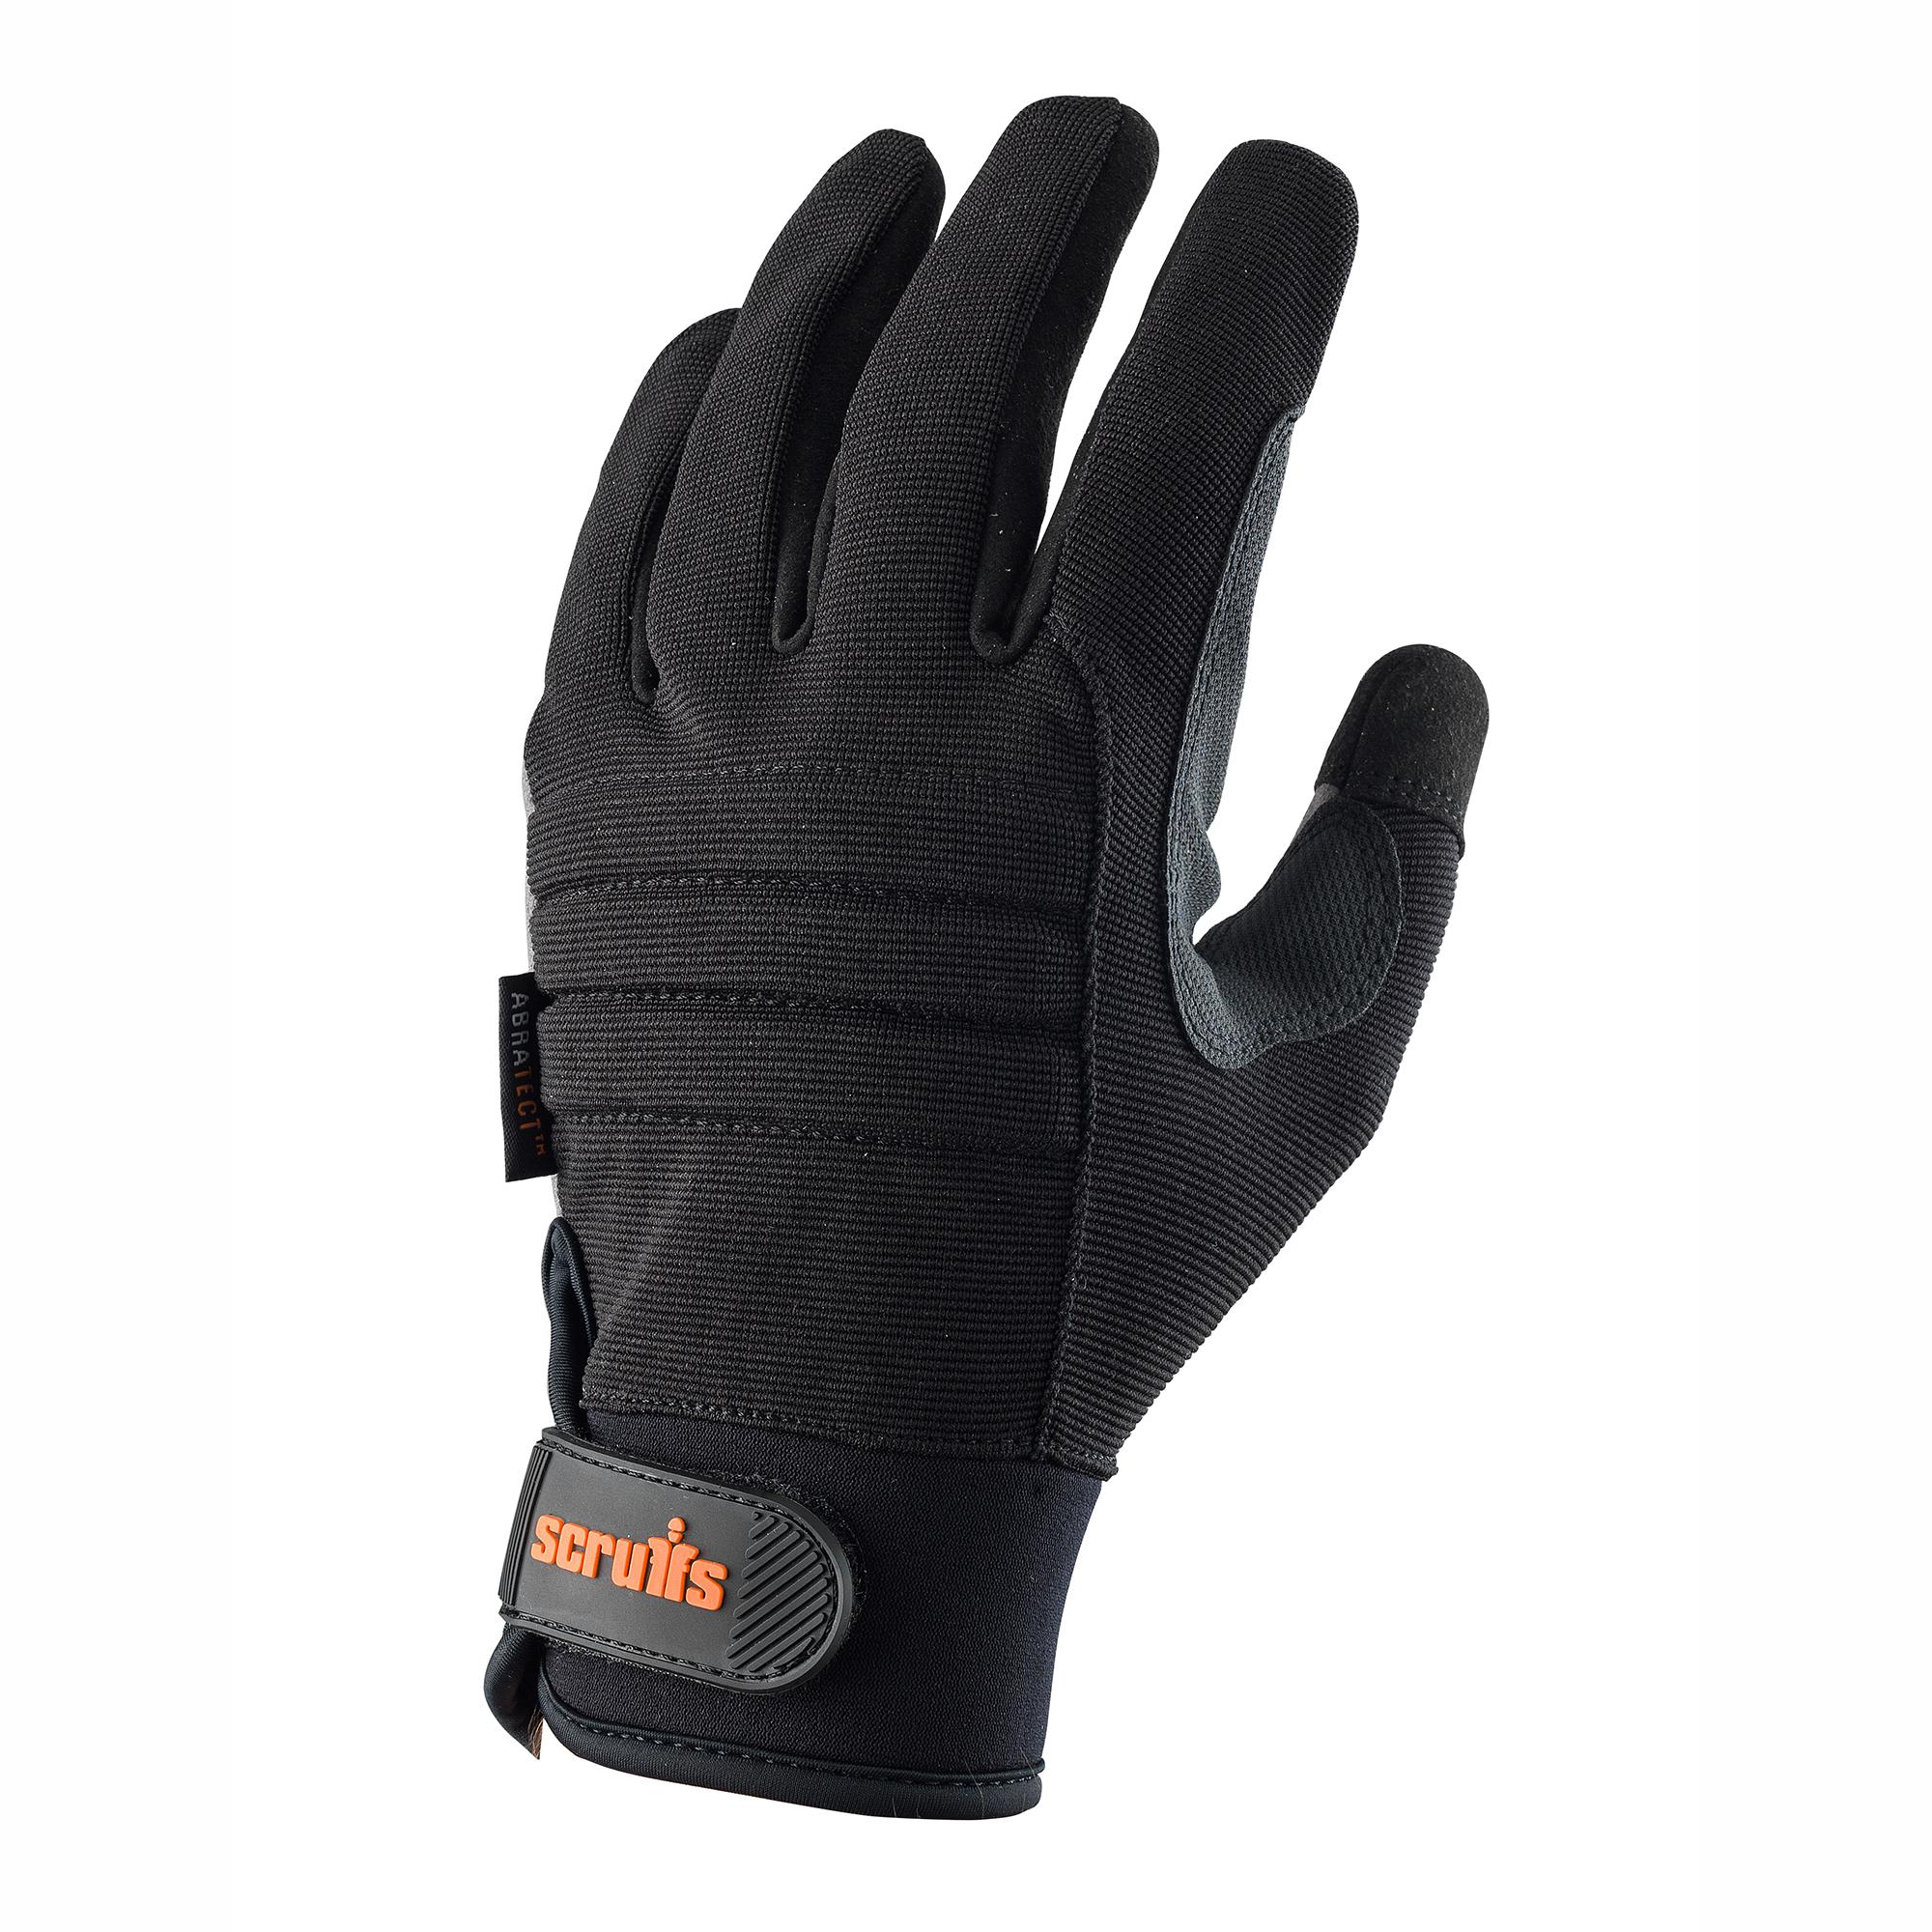 Scruffs Trade Work Gloves 